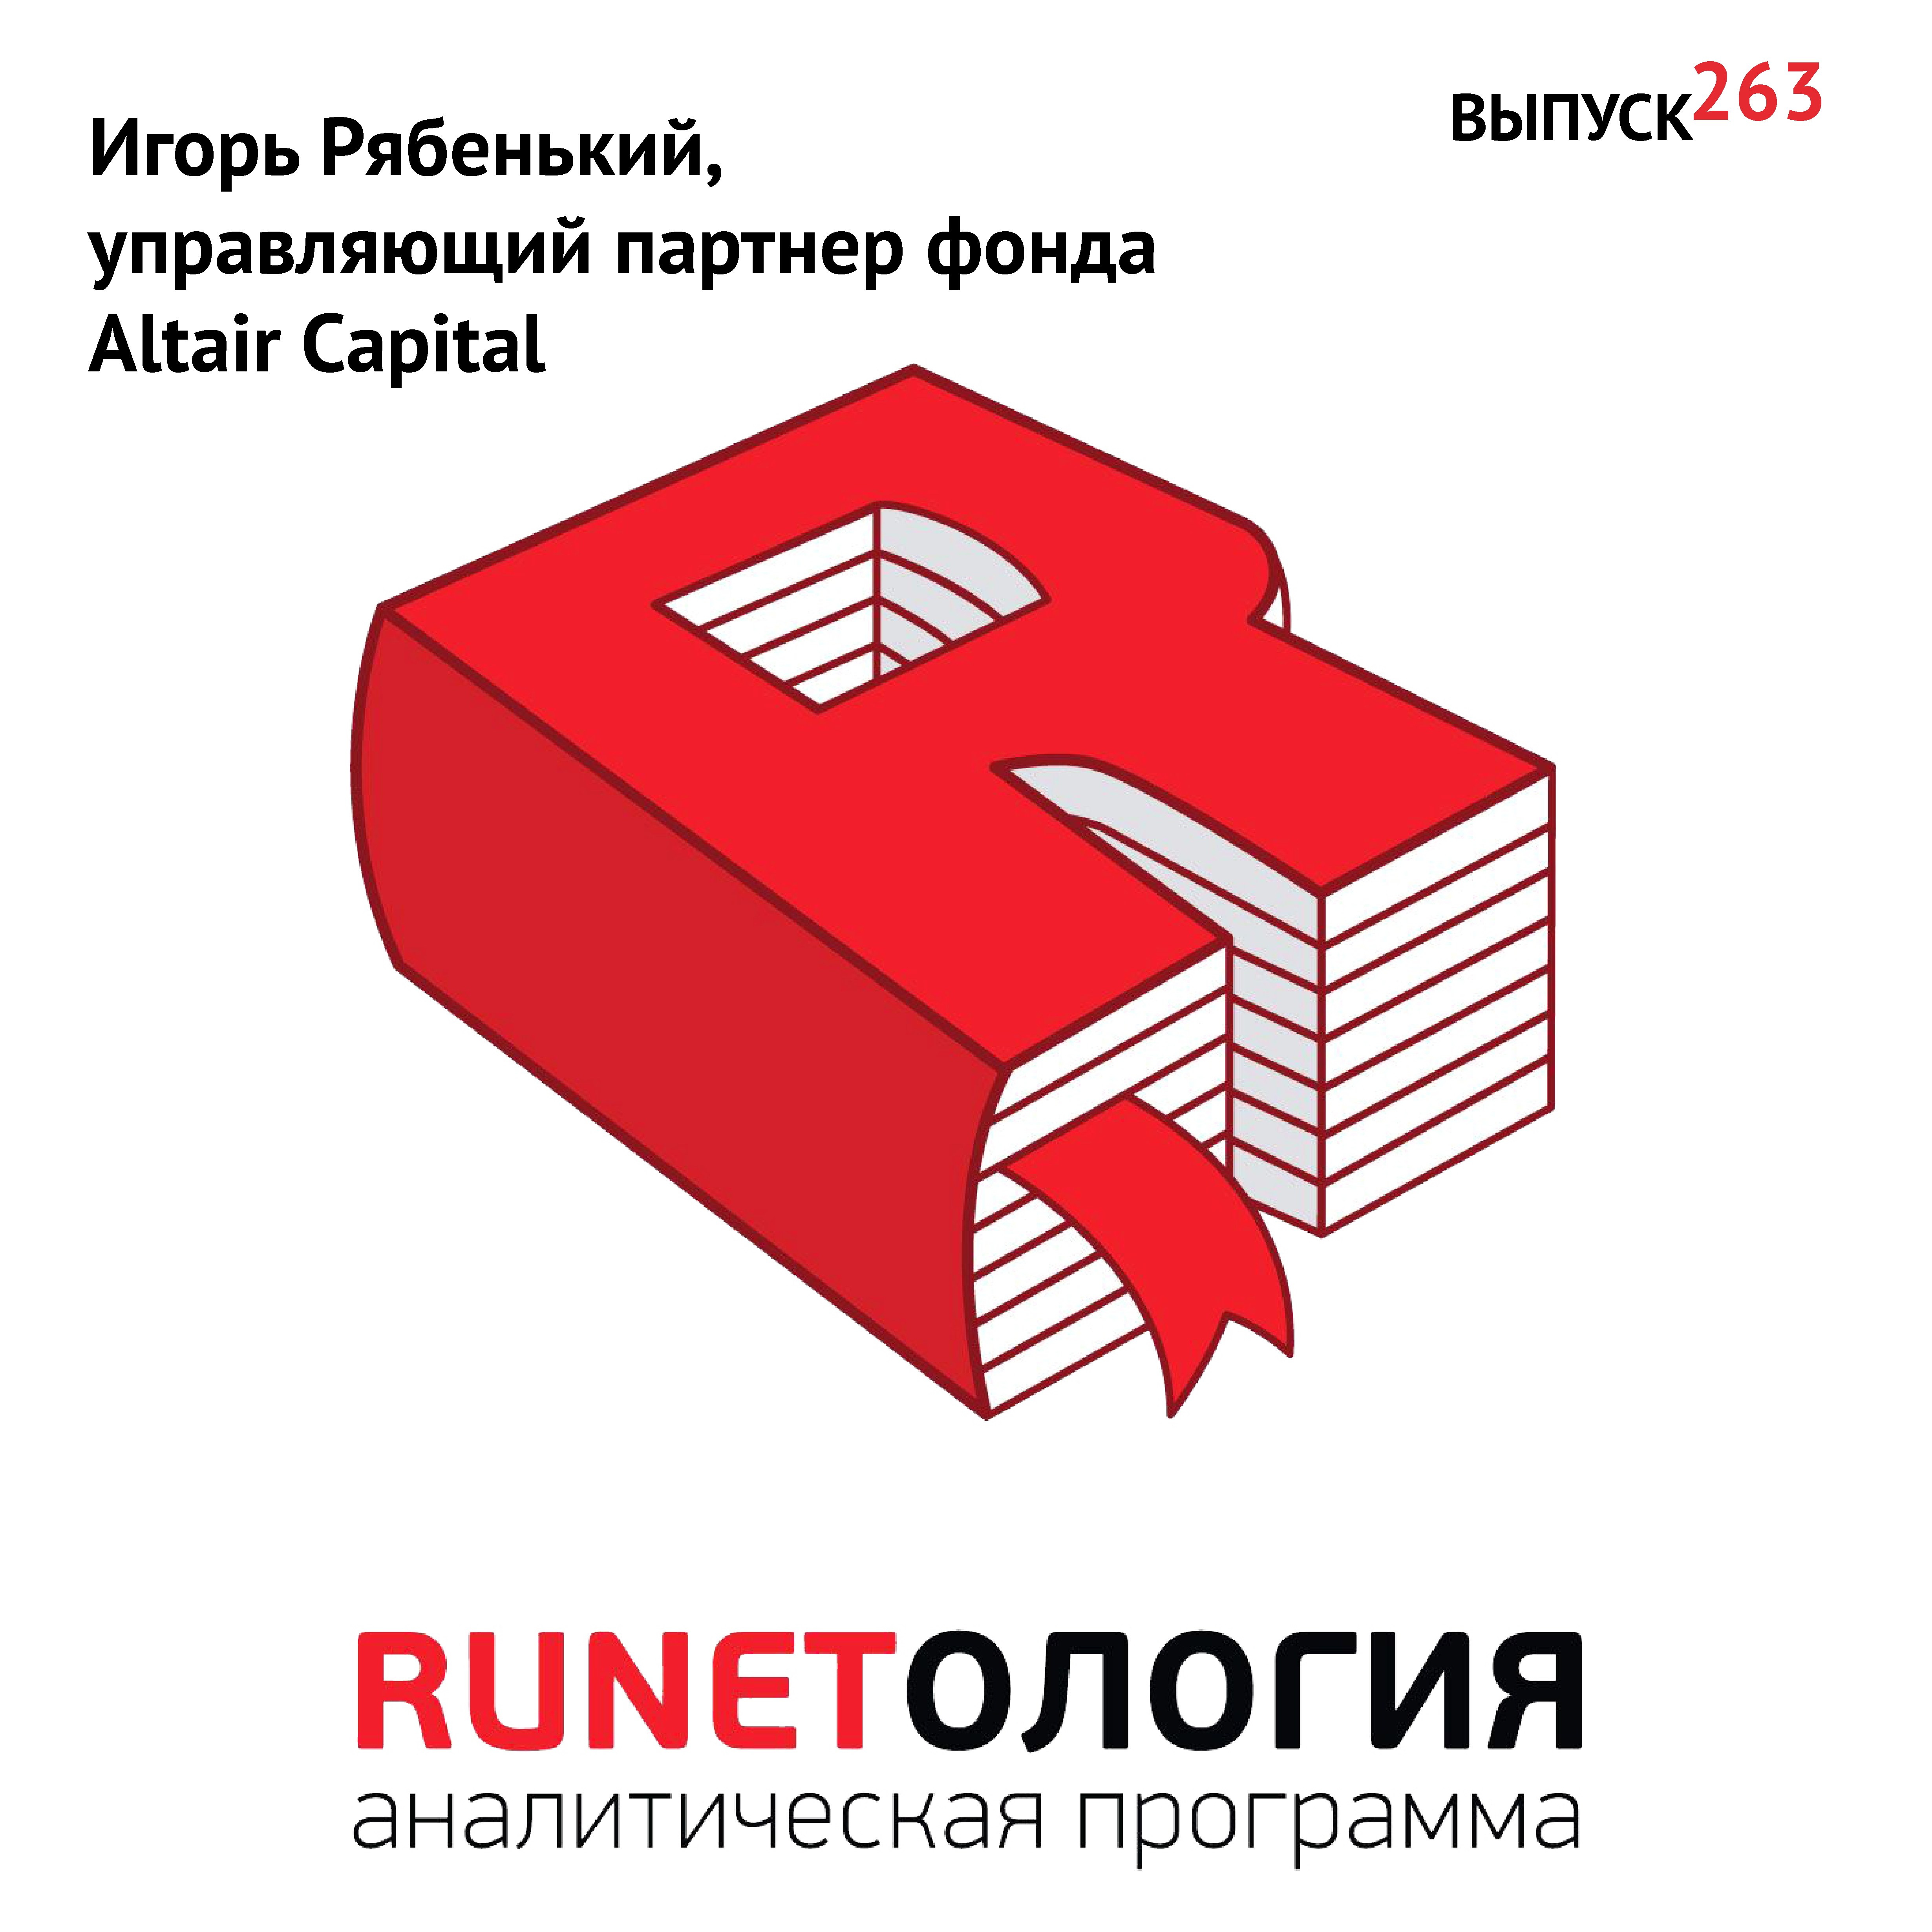 Игорь Рябенький, управляющий партнер фонда Altair Capital